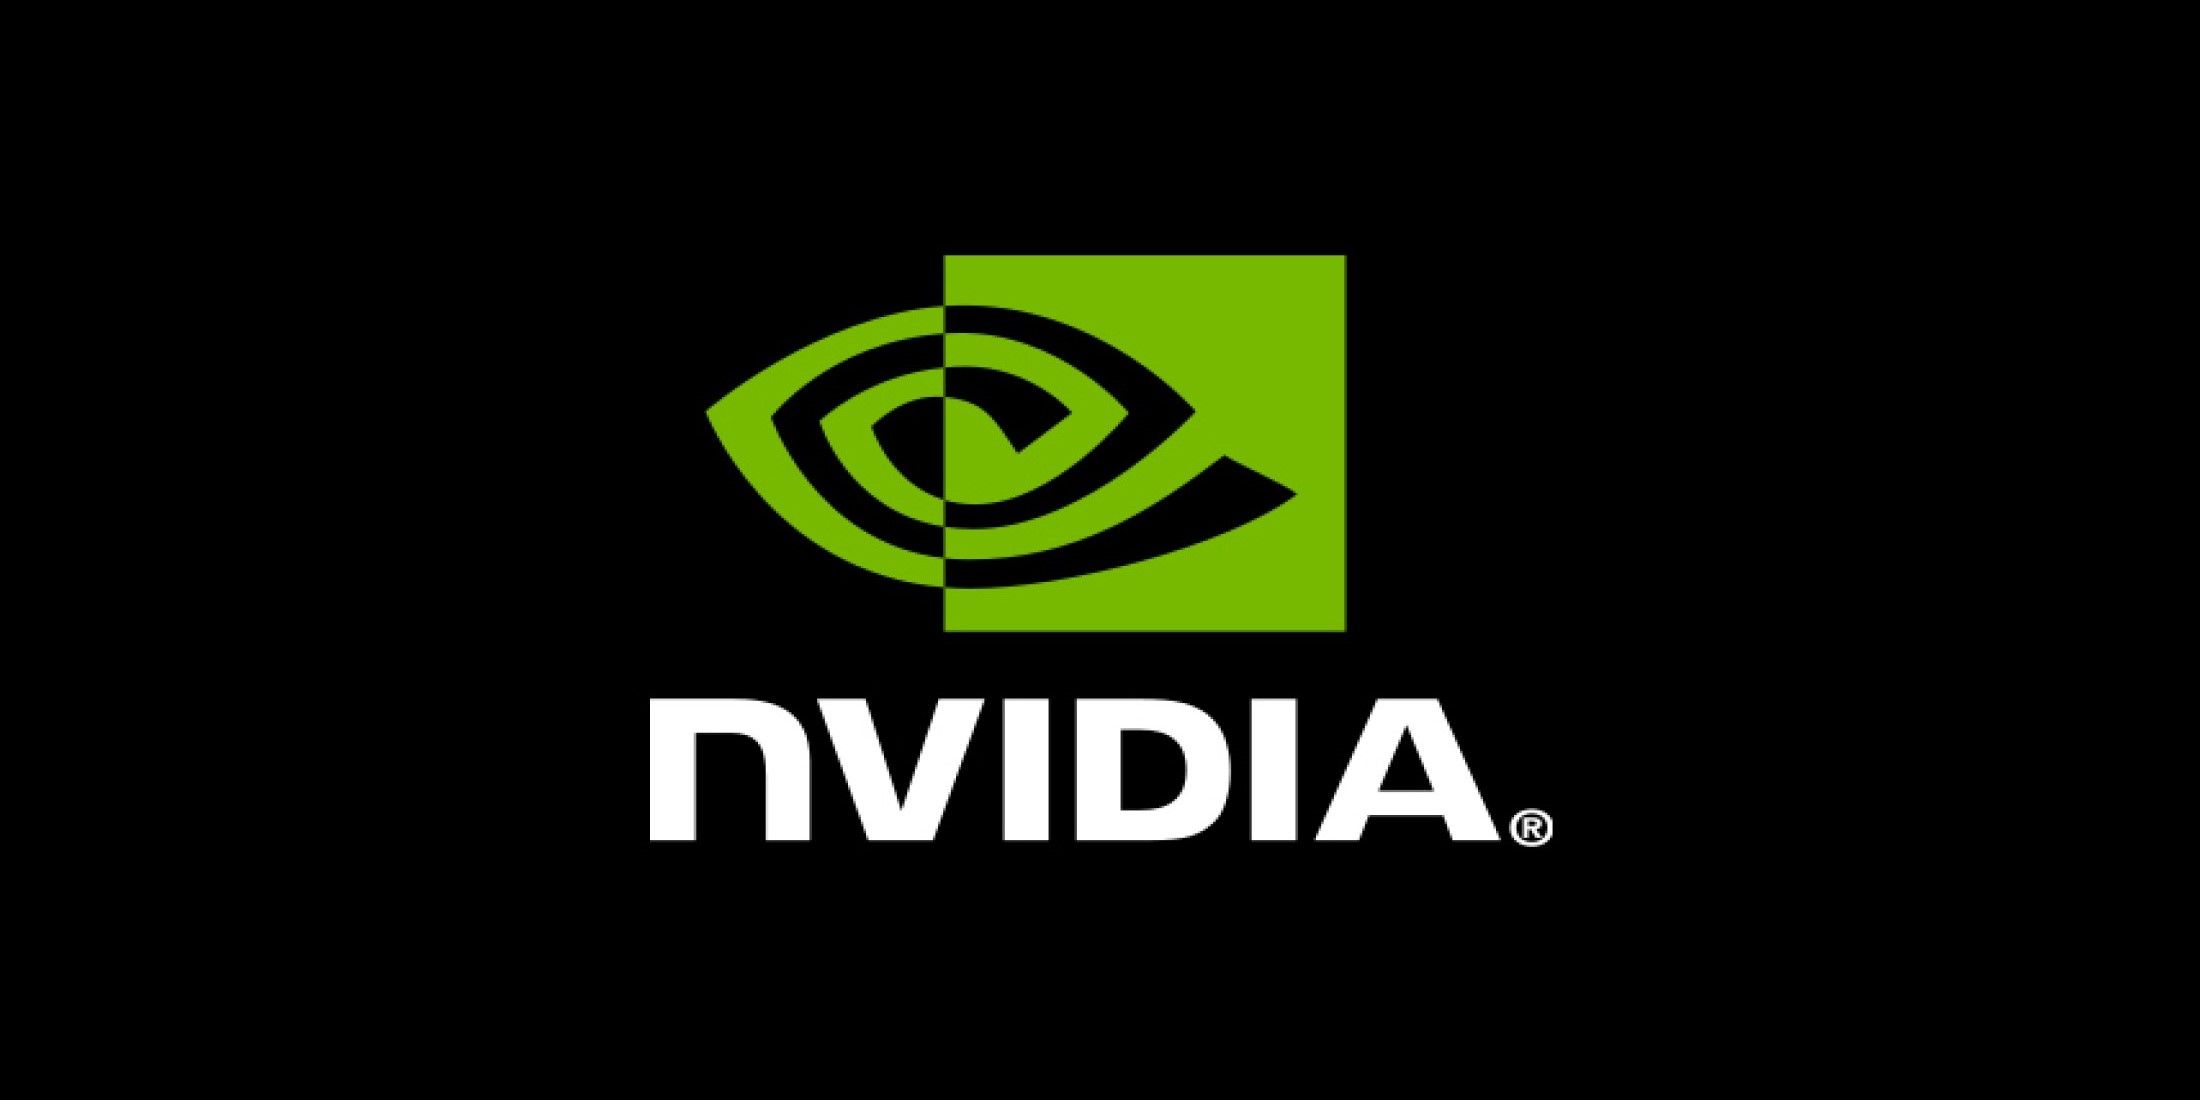 NVIDIA-logo-black-background